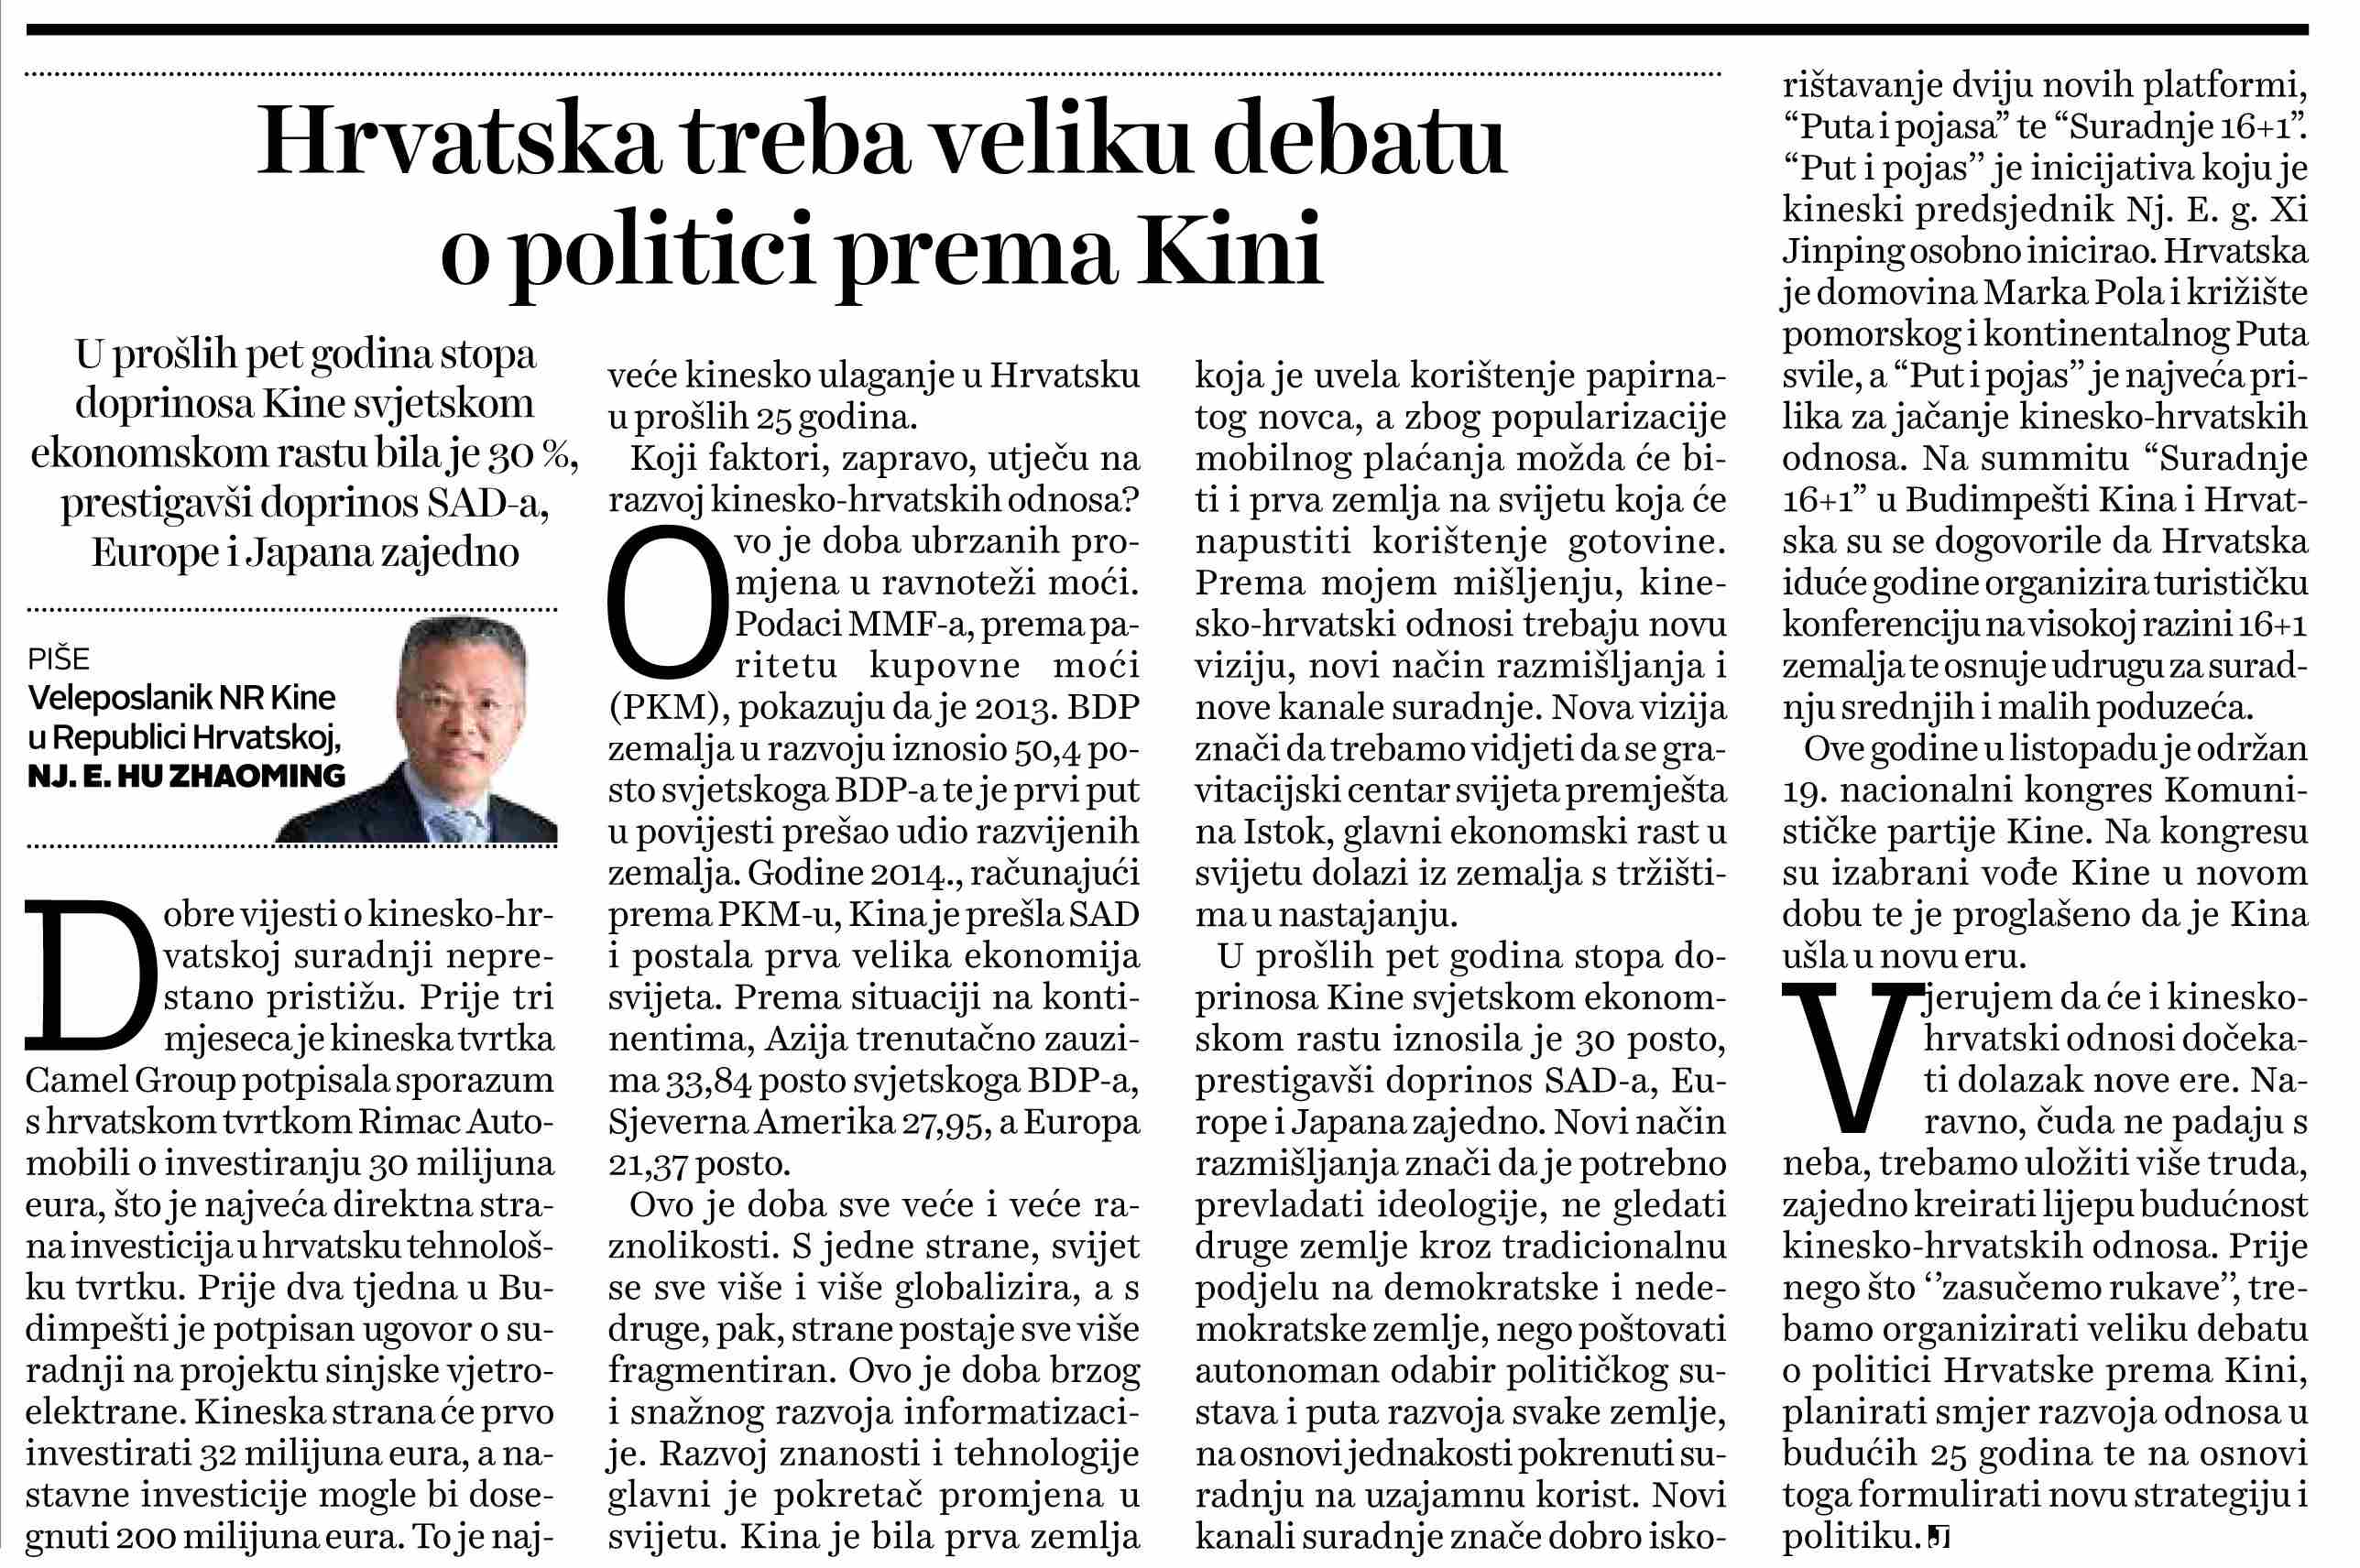 驻克罗地亚大使胡兆明在《晨报》发表题署名文章,欧洲,欧洲网